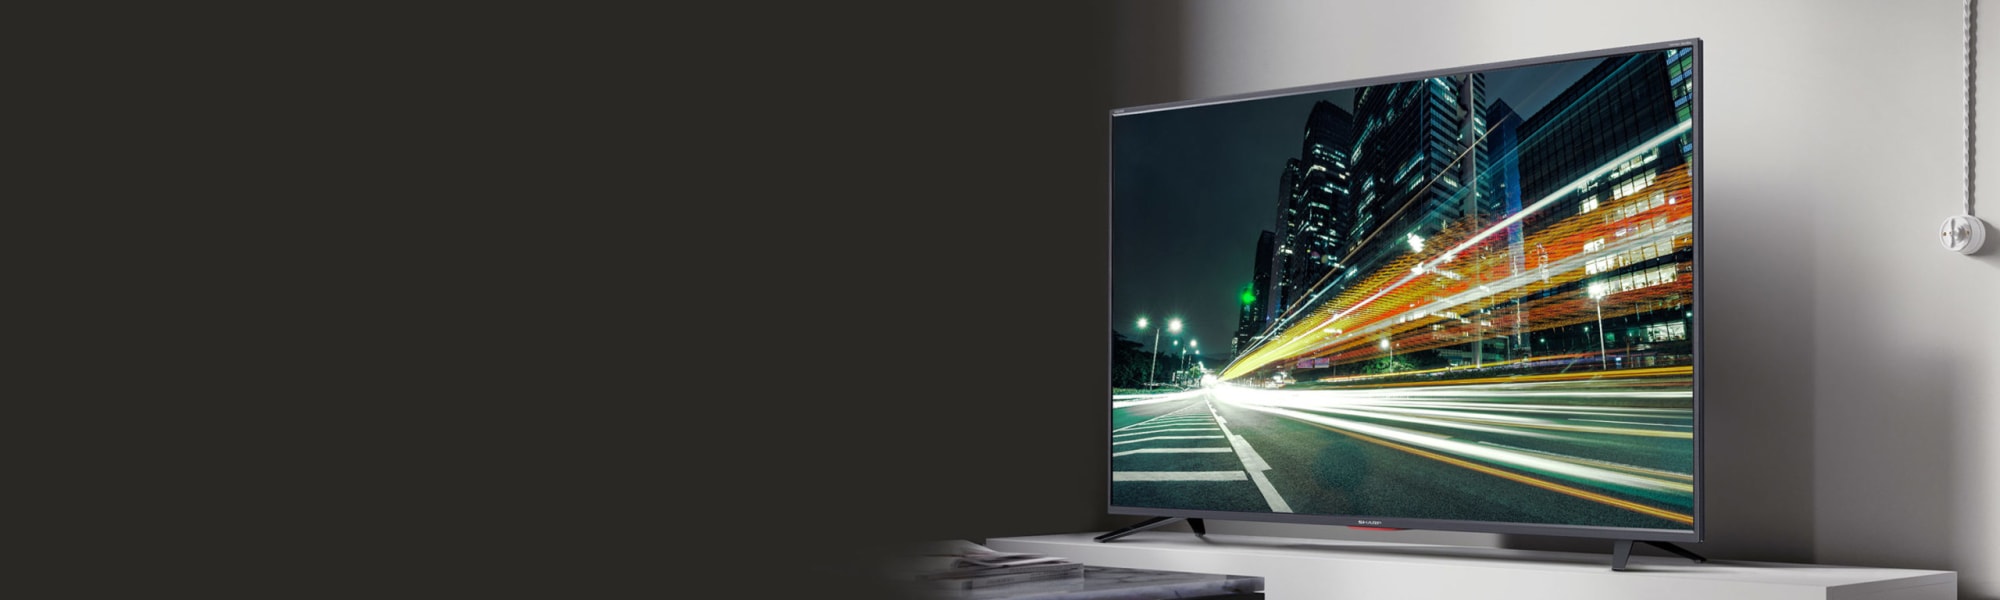 Smart TV's 4K UHD - Sharp Europe